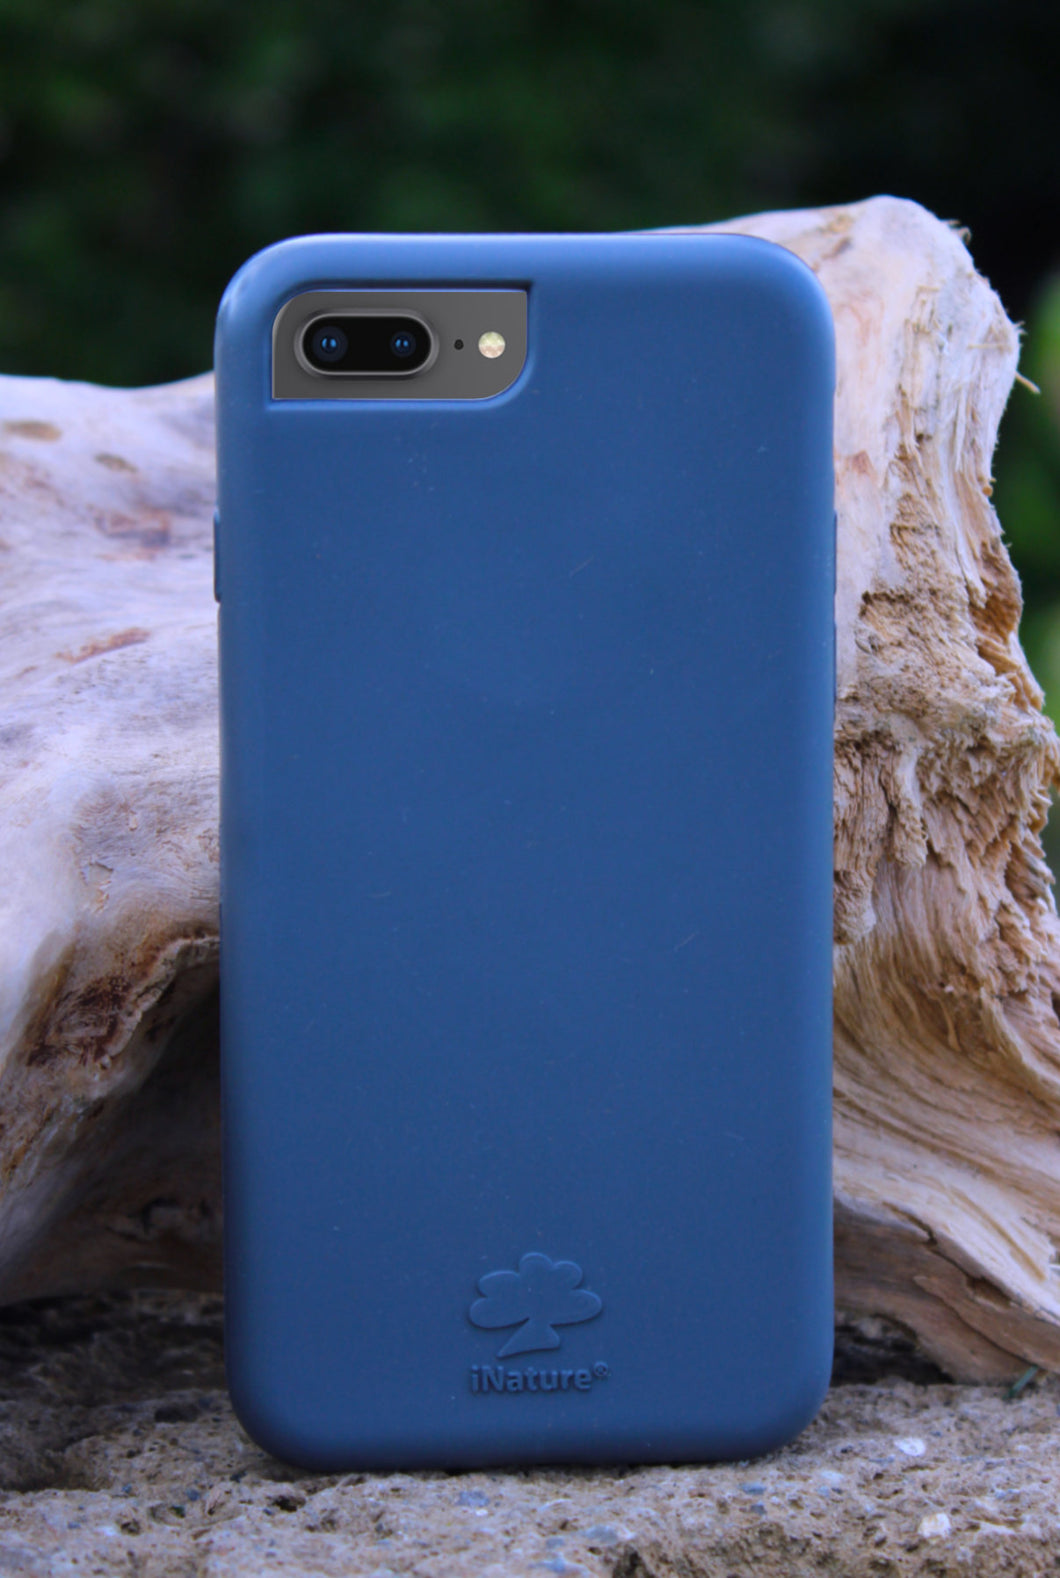 iNature Ocean Blue iPhone 7/8 Plus Case